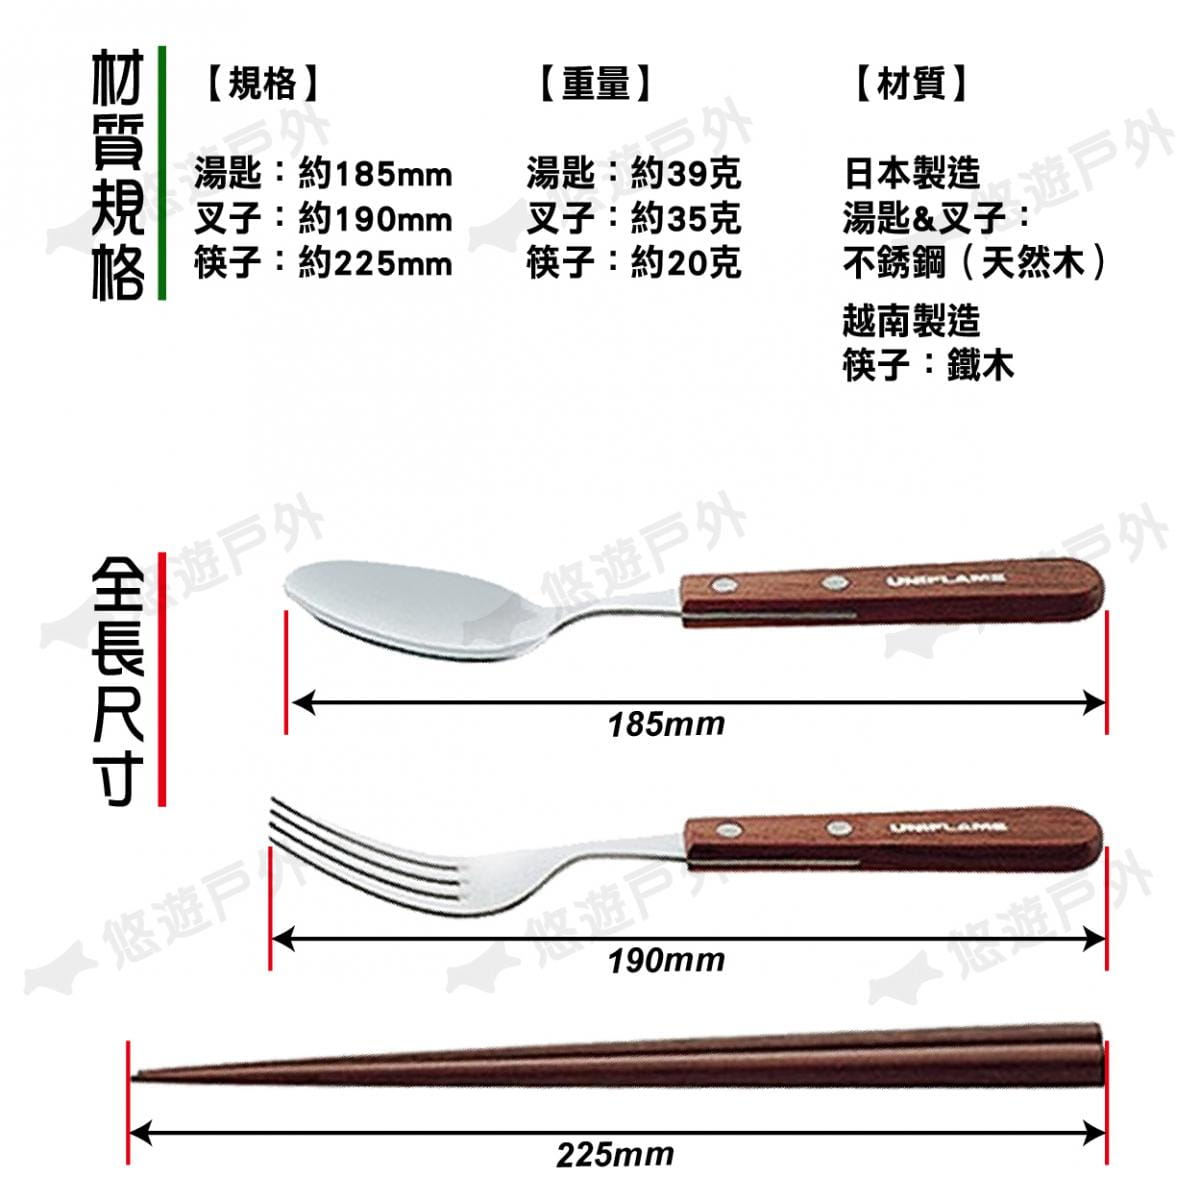 【UNIFLAME】U722350 日本 FAN單人餐具組 /匙+叉+筷 居家.露營.戶外.野炊 1